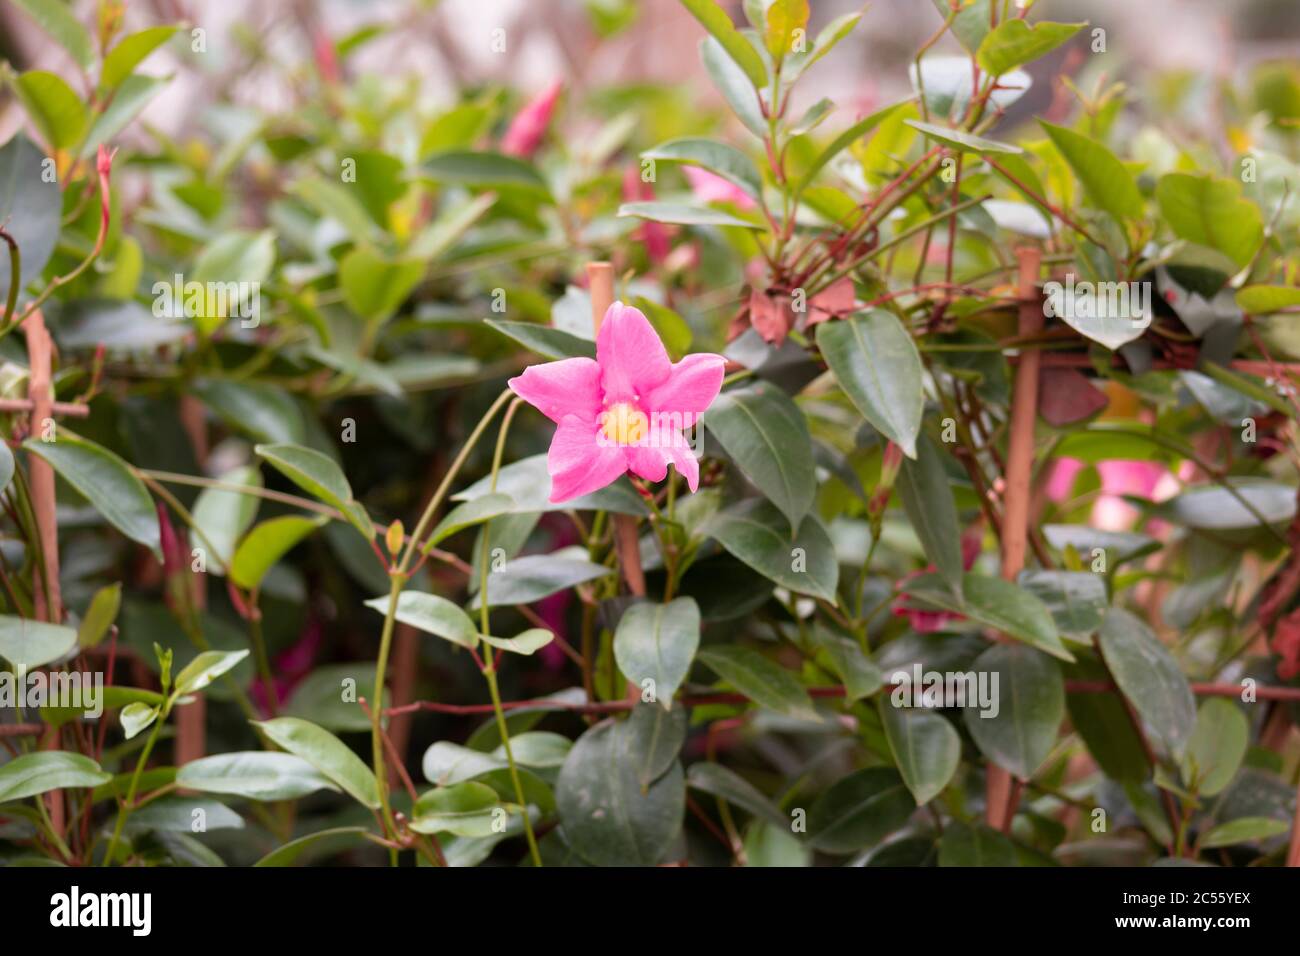 Shallow focus shot of a pink rocktrumpet flower in a garden Stock Photo